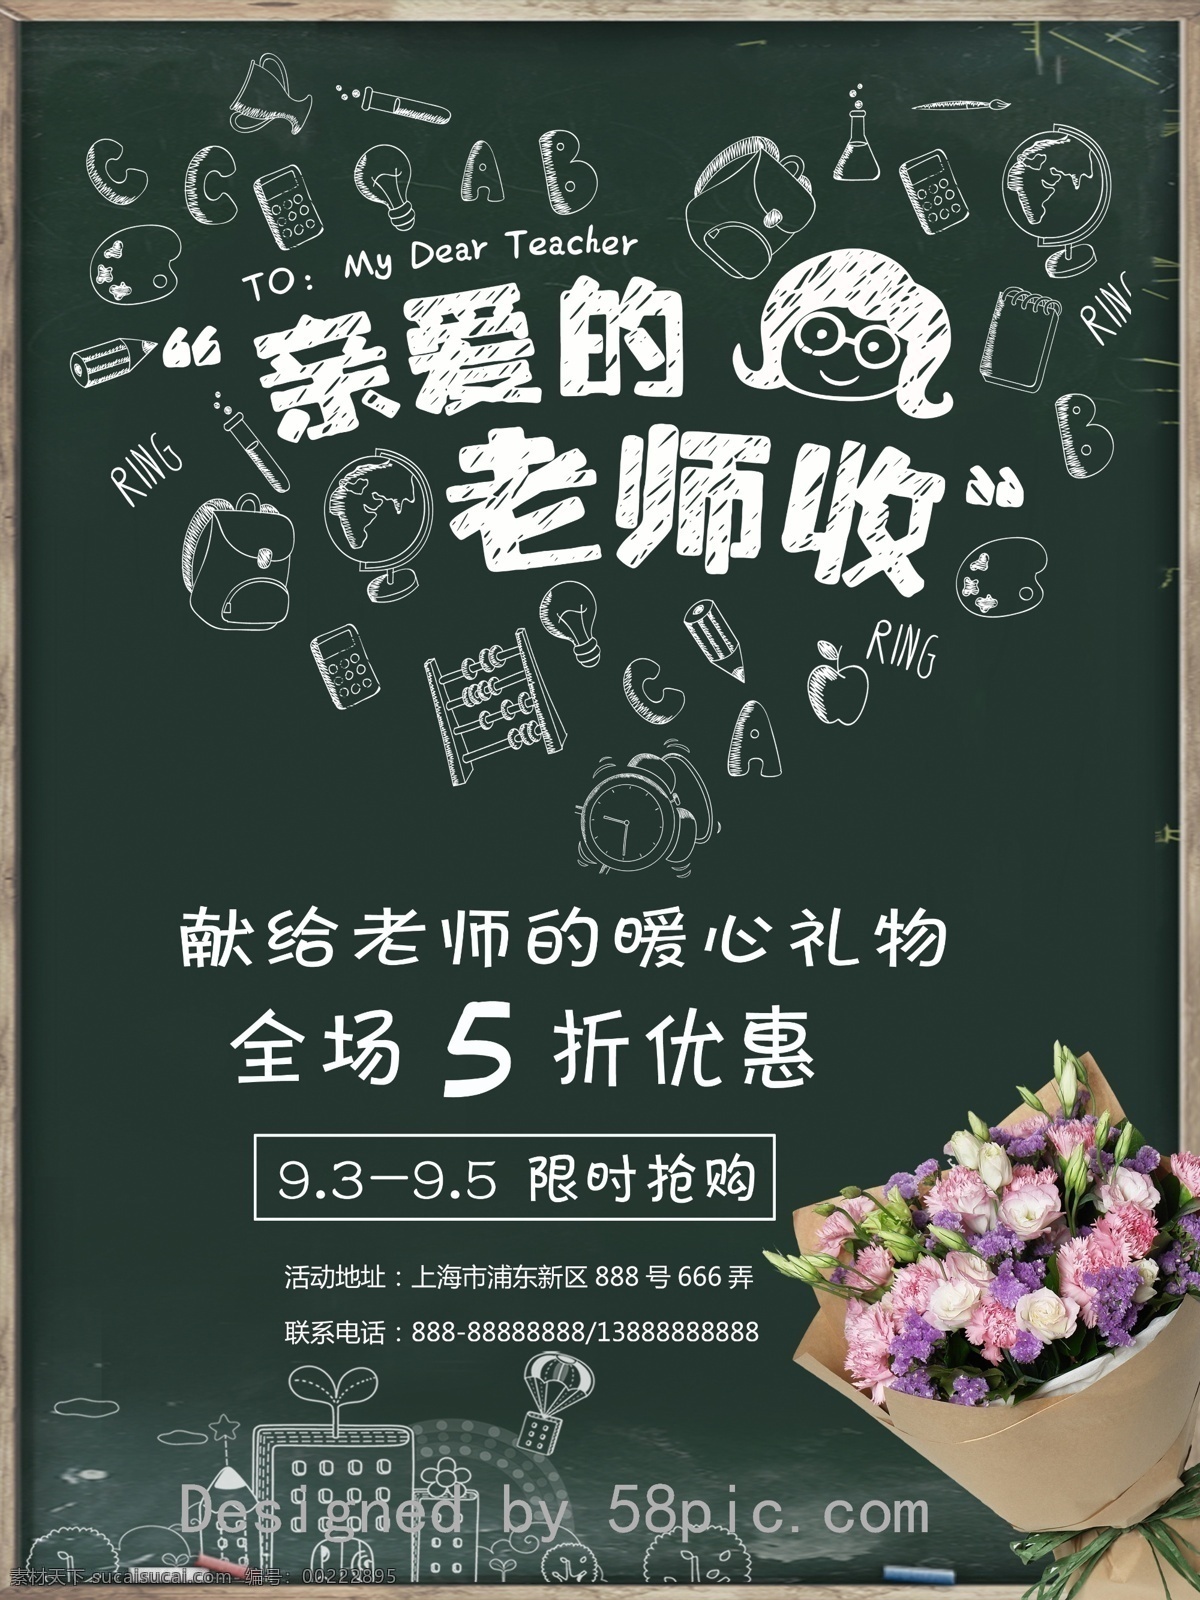 原创 教师节 文艺 鲜花店 促销 宣传海报 原创素材 海报 教师节礼物 黑板